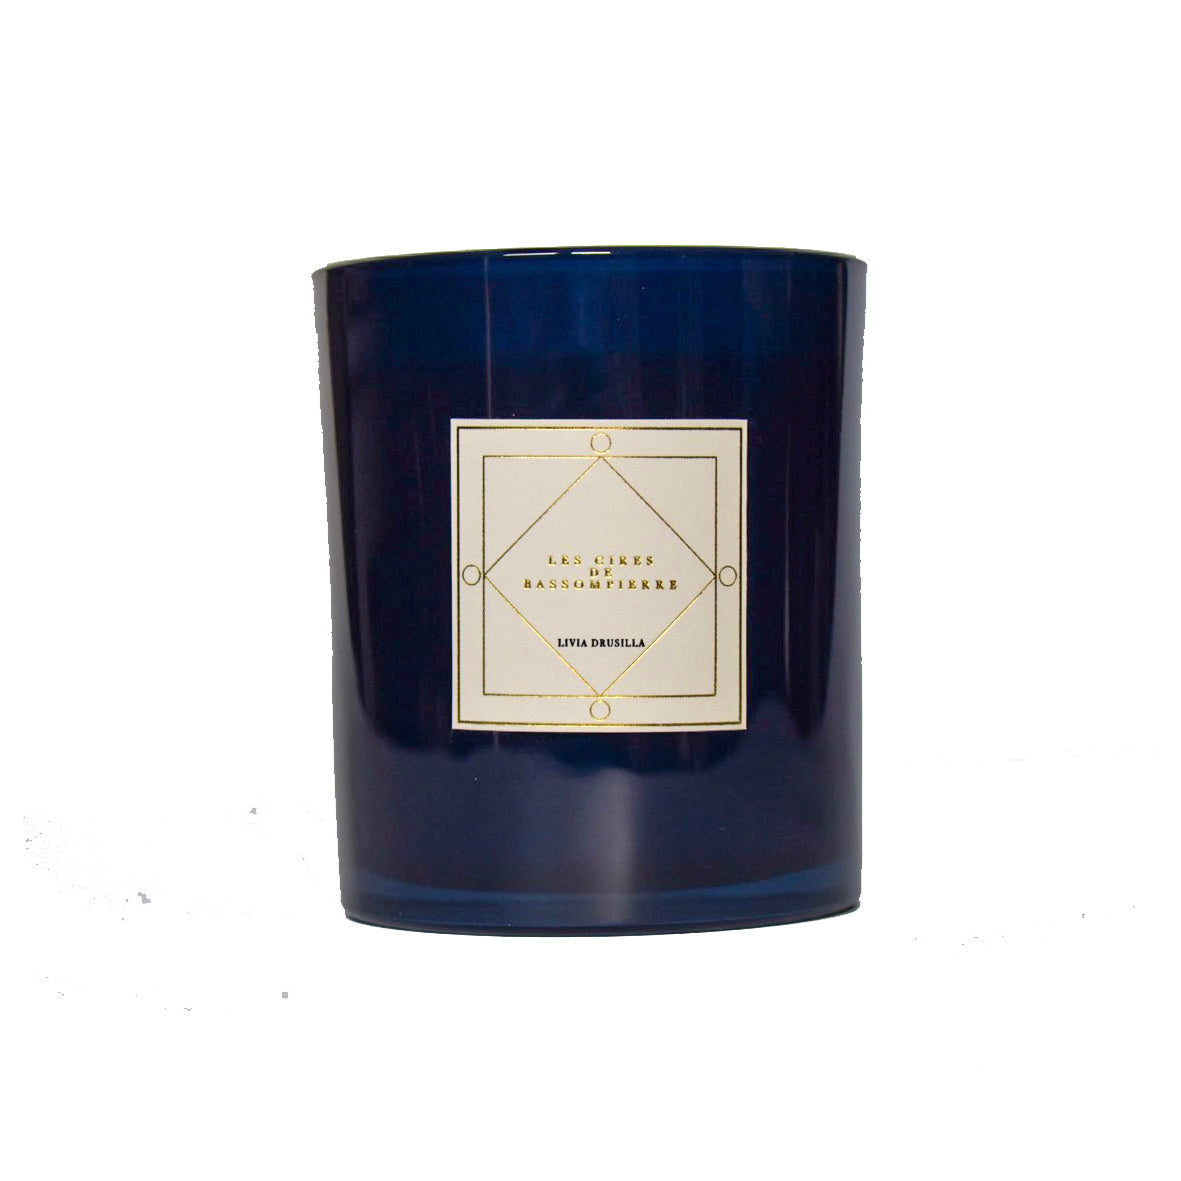 Livia Drusilla - scented candle